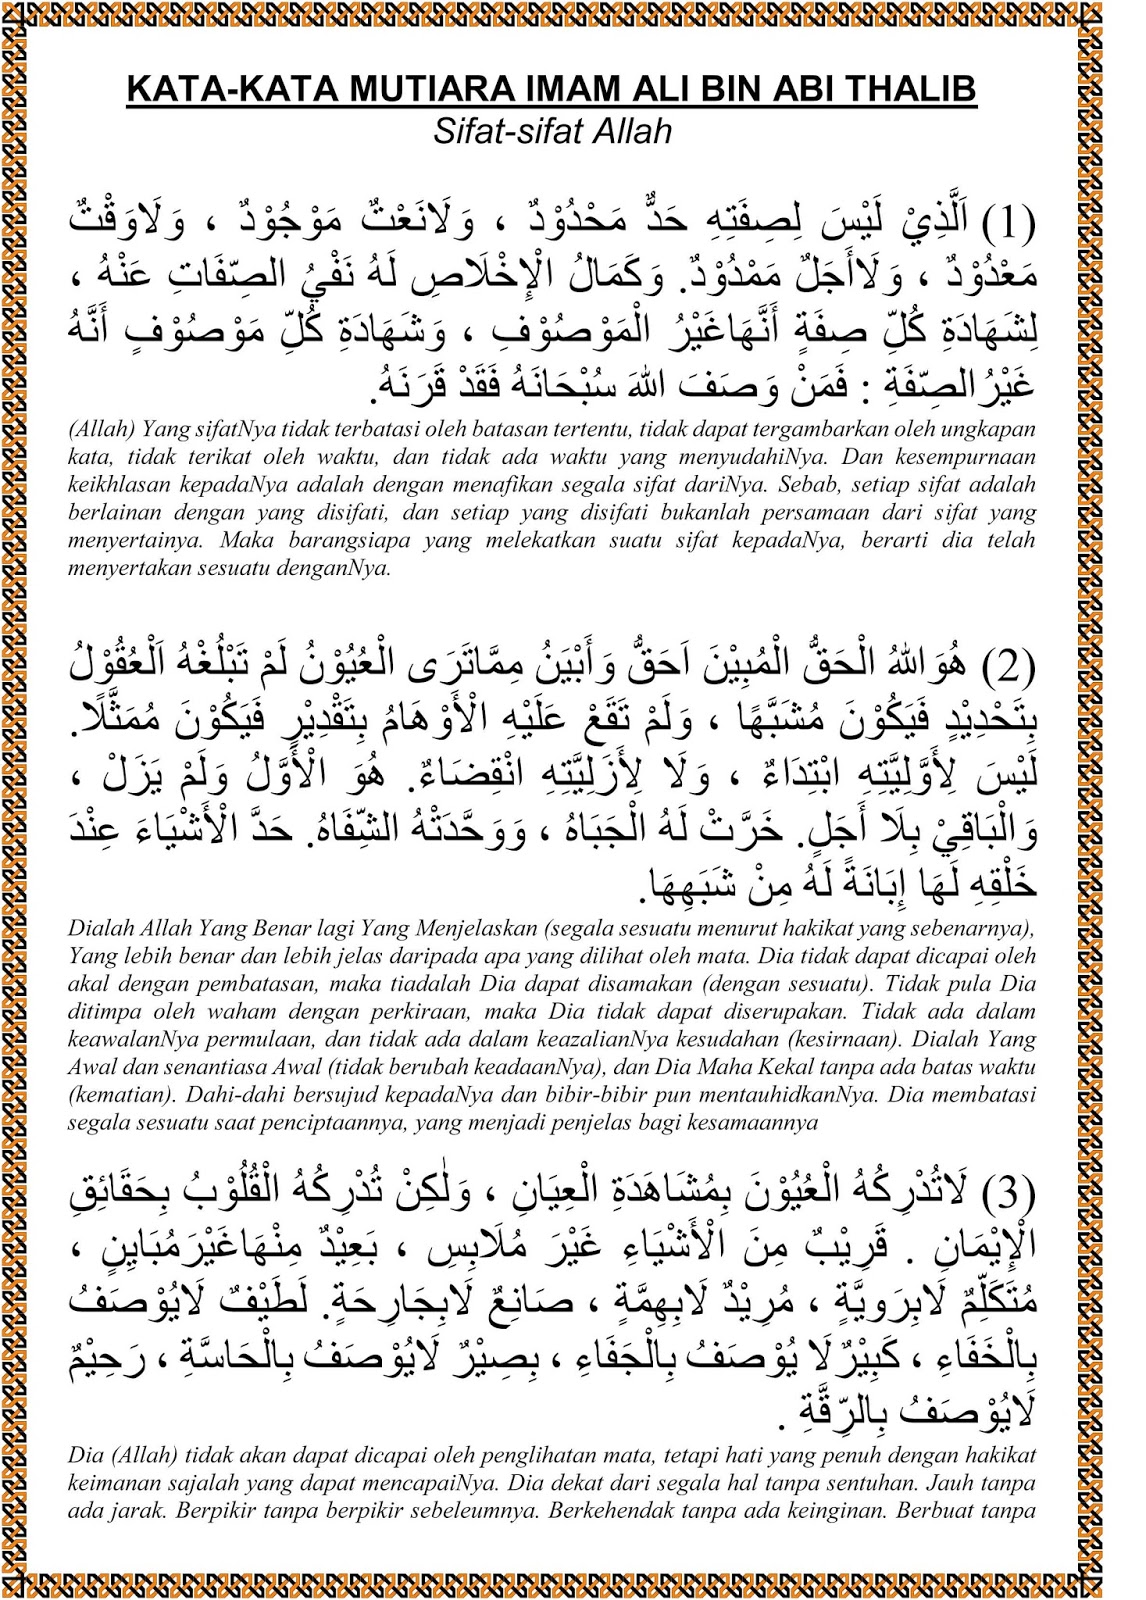 Sifat Sifat Allah Kata Kata Mutiara Imam Ali Bin Abi Thalib